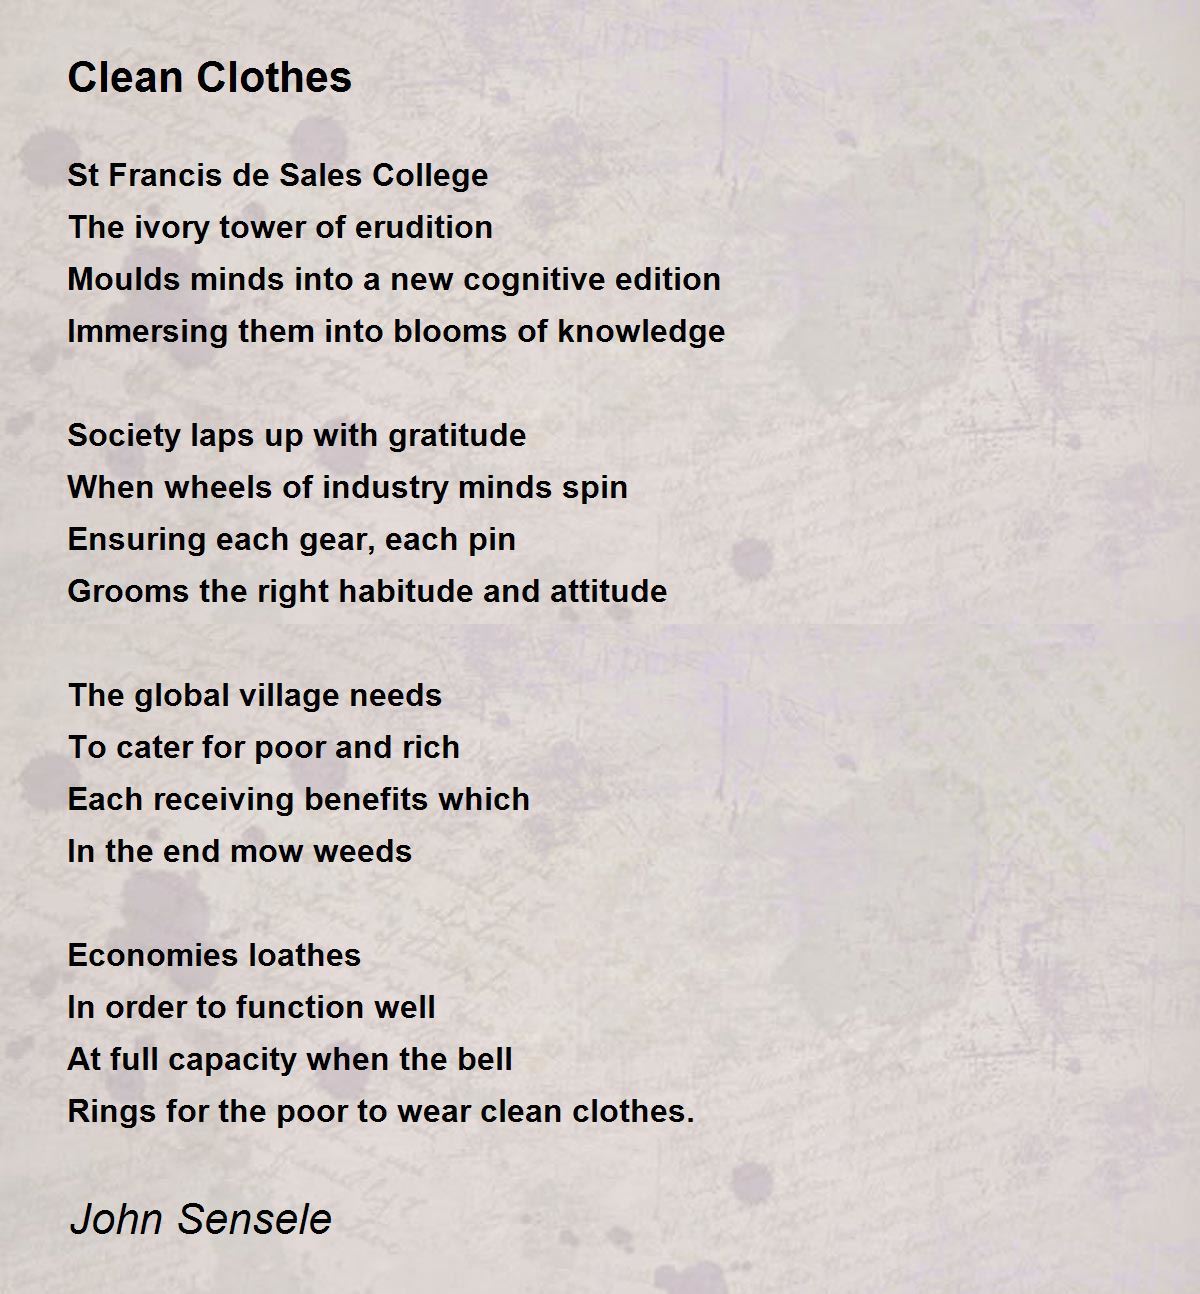 Clean Clothes - Clean Clothes Poem by John Sensele